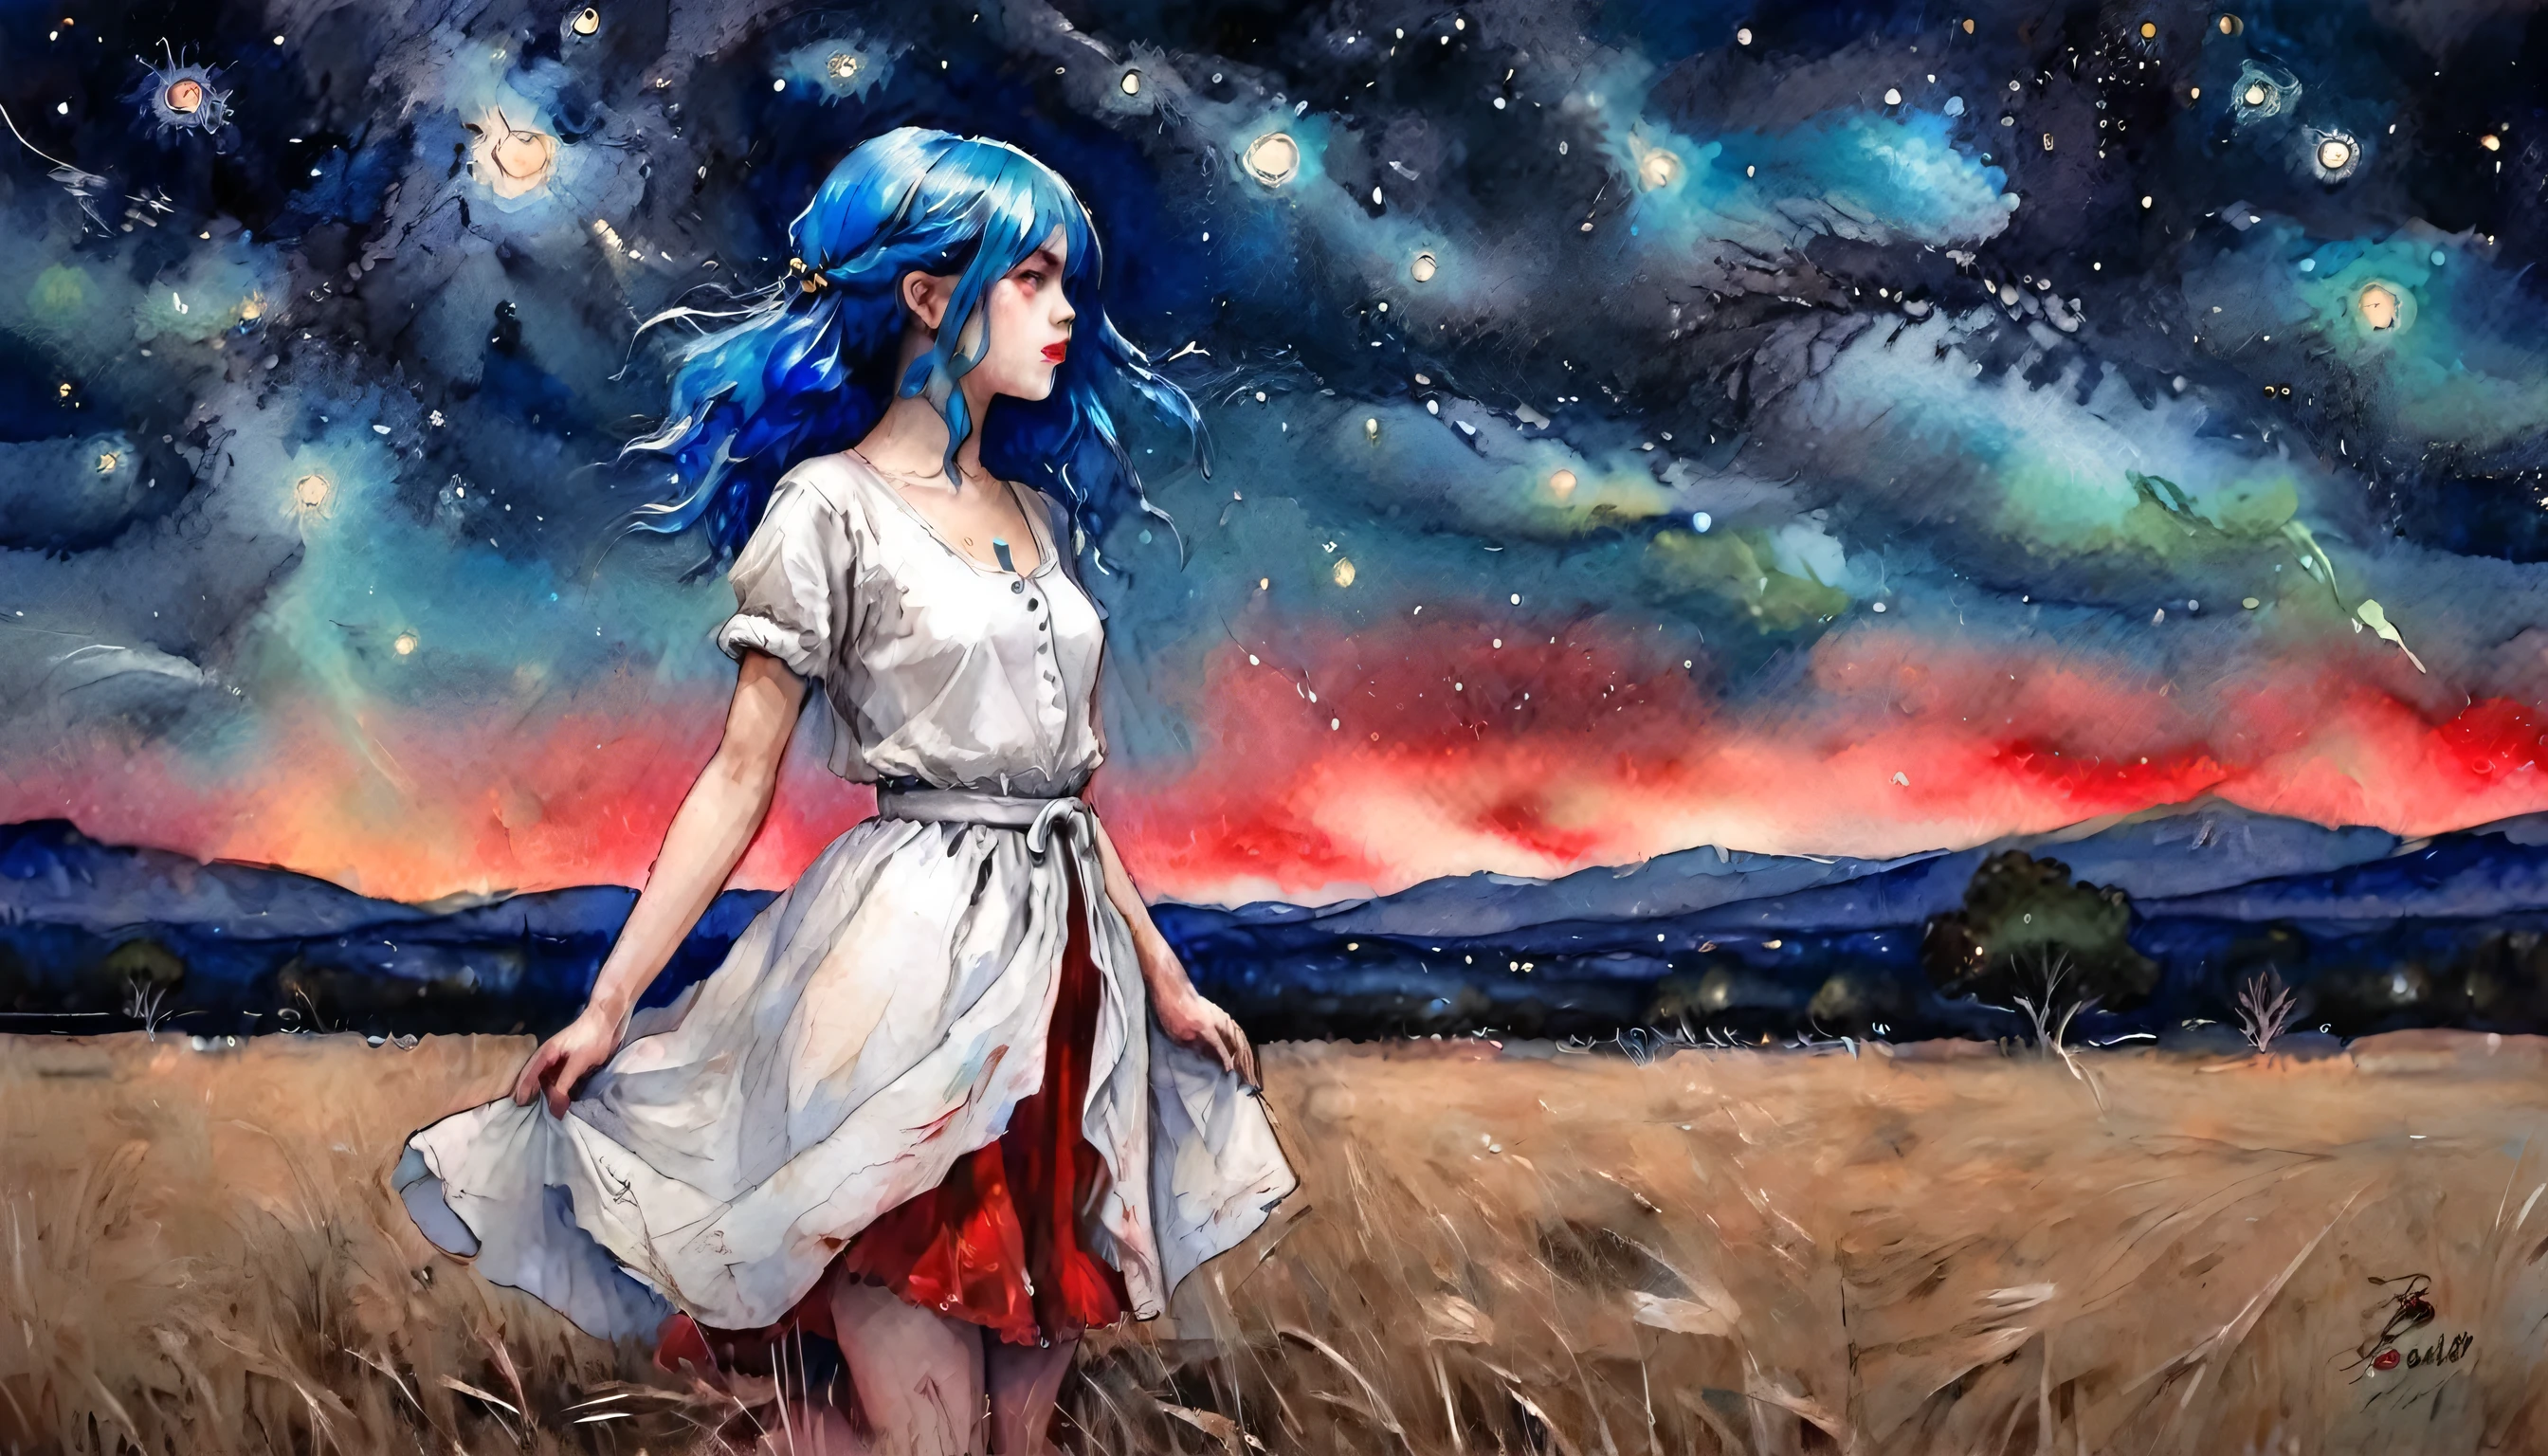 ein Mädchen, Blaue Haare, trägt ein helles weißes Outfit und einen roten Rock, auf einem offenen Feld positioniert, Nacht, Detaillierter Sternenhimmel, wunderbare Kunst, leuchtende Farben, Aquarell